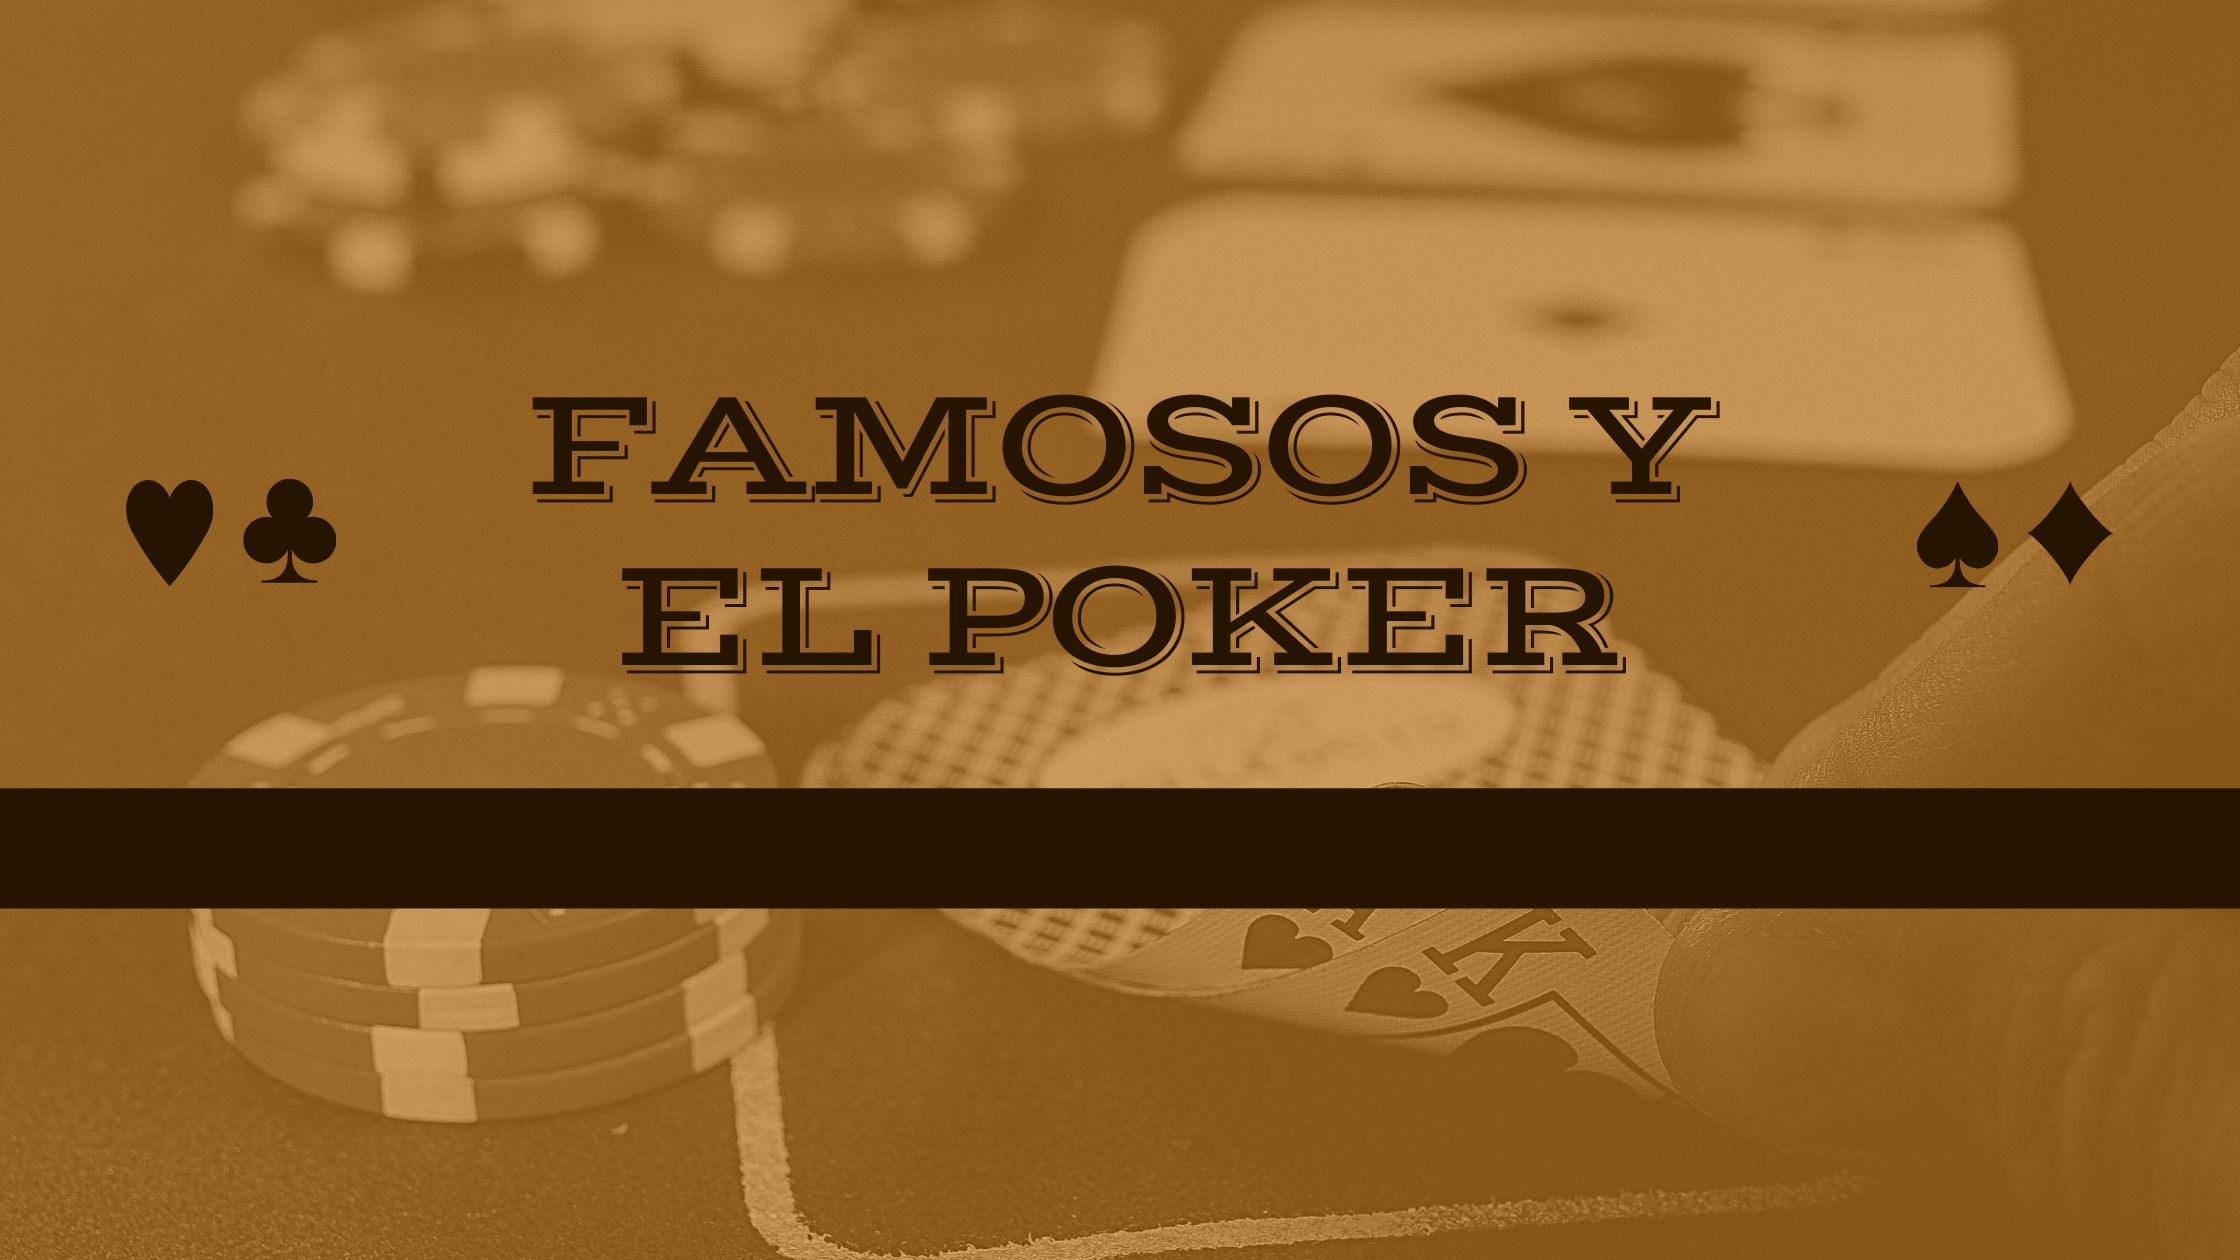 Los famosos que juegan al poker